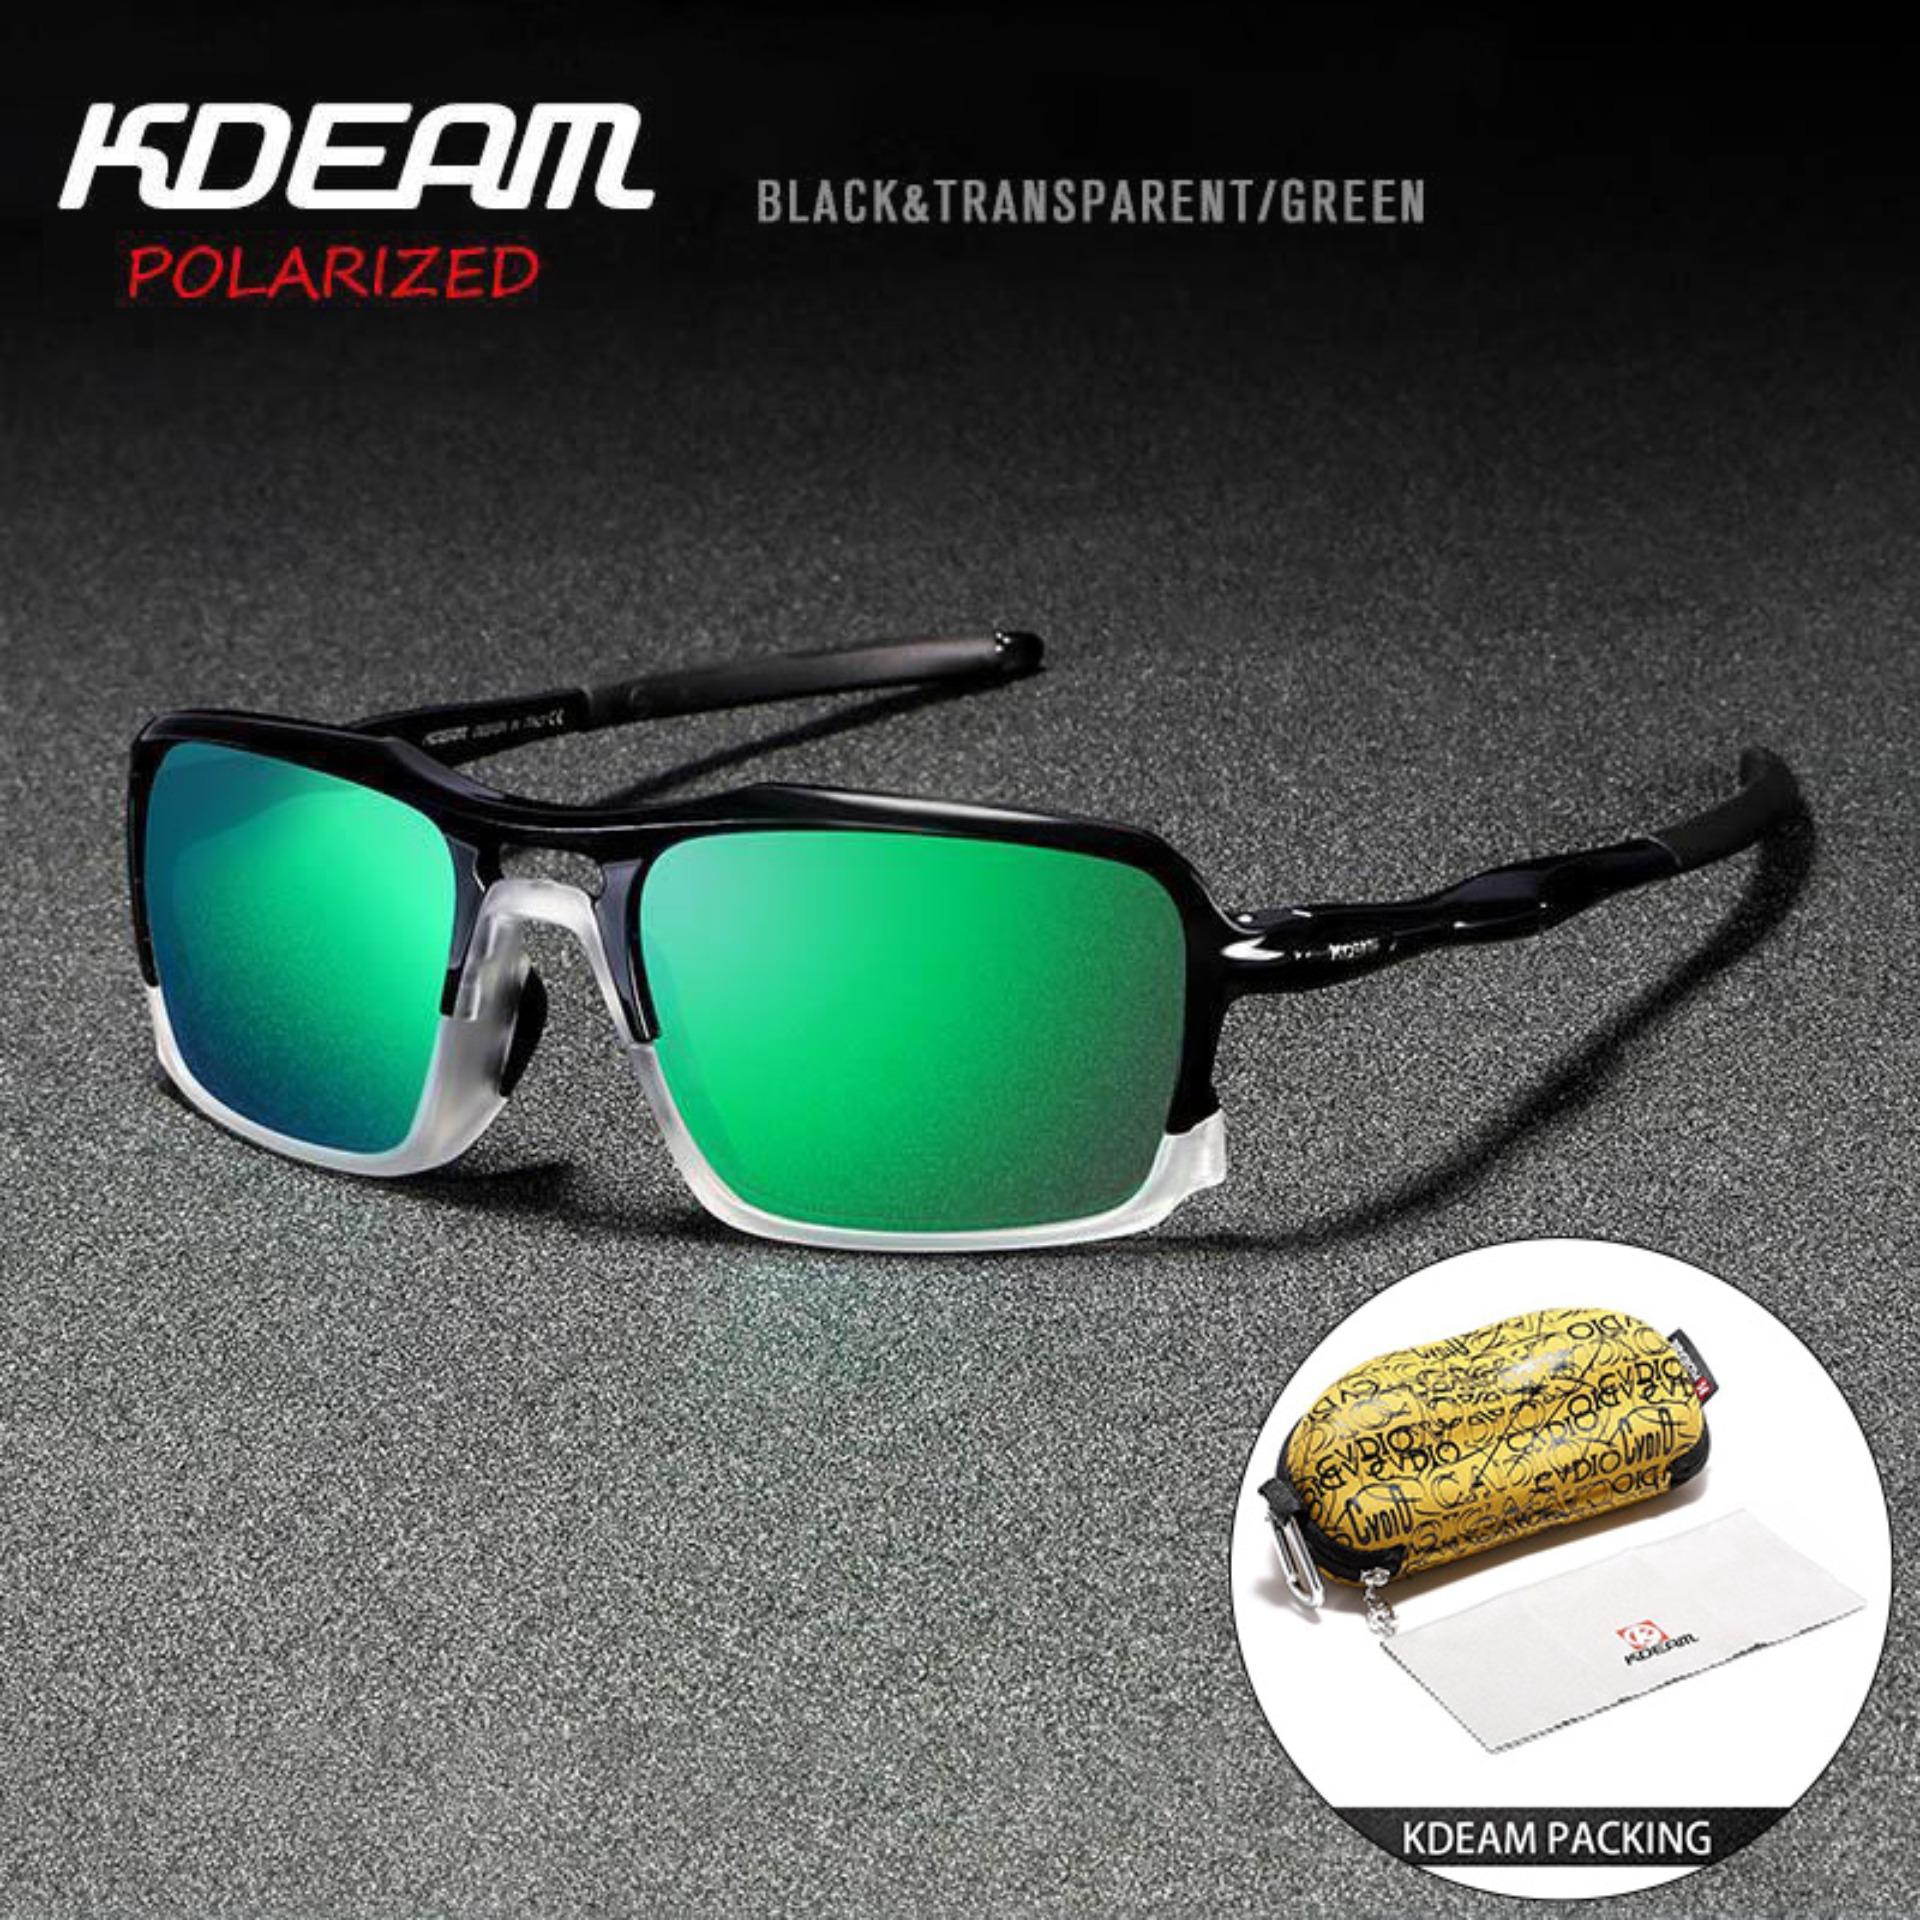 Original KDEAM New Sports UV400 Sunglasses High-end Ultra-light TR-90 Frame  True Film Polarized Outdoor Glasses Dark Grey Lens With Brand Box